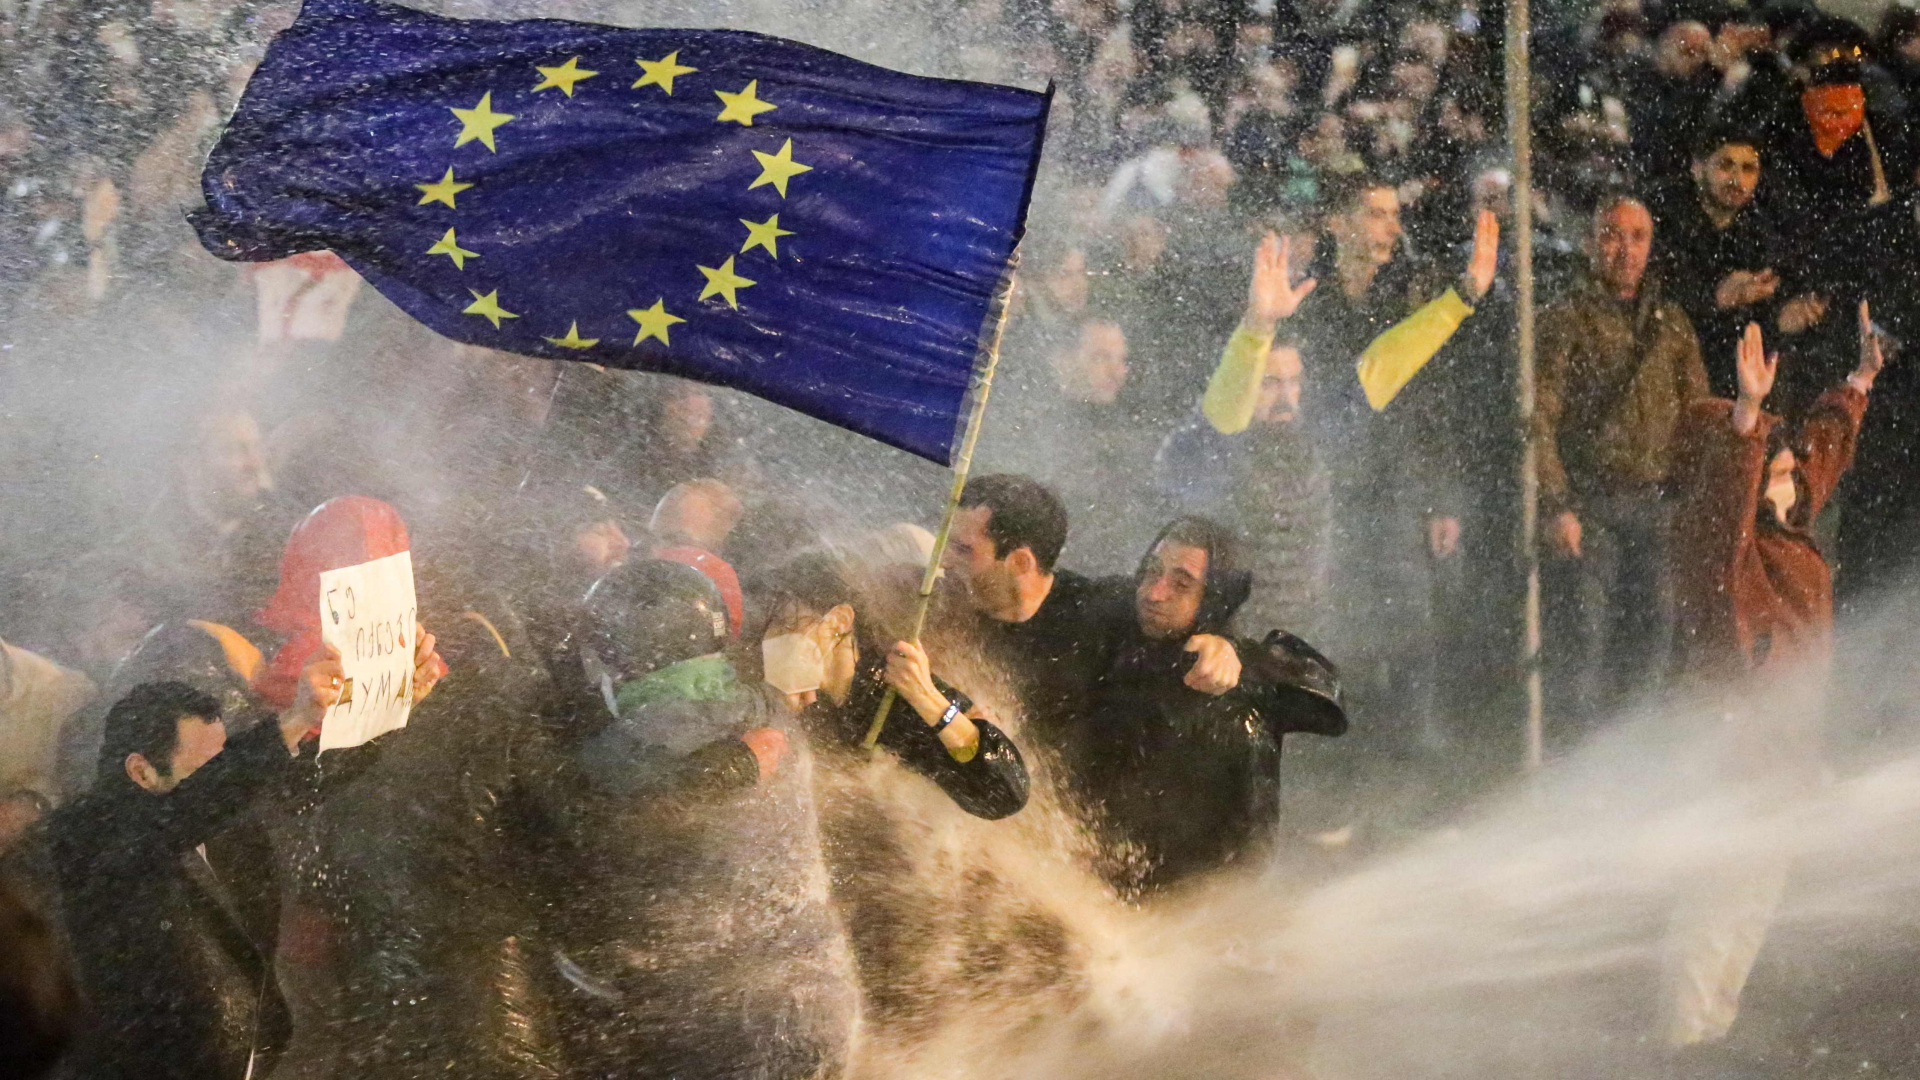 Demonstranten mit einer Europa-Flagge inmitten eines Wasserwerfer-Strahls der Polizei | AFP